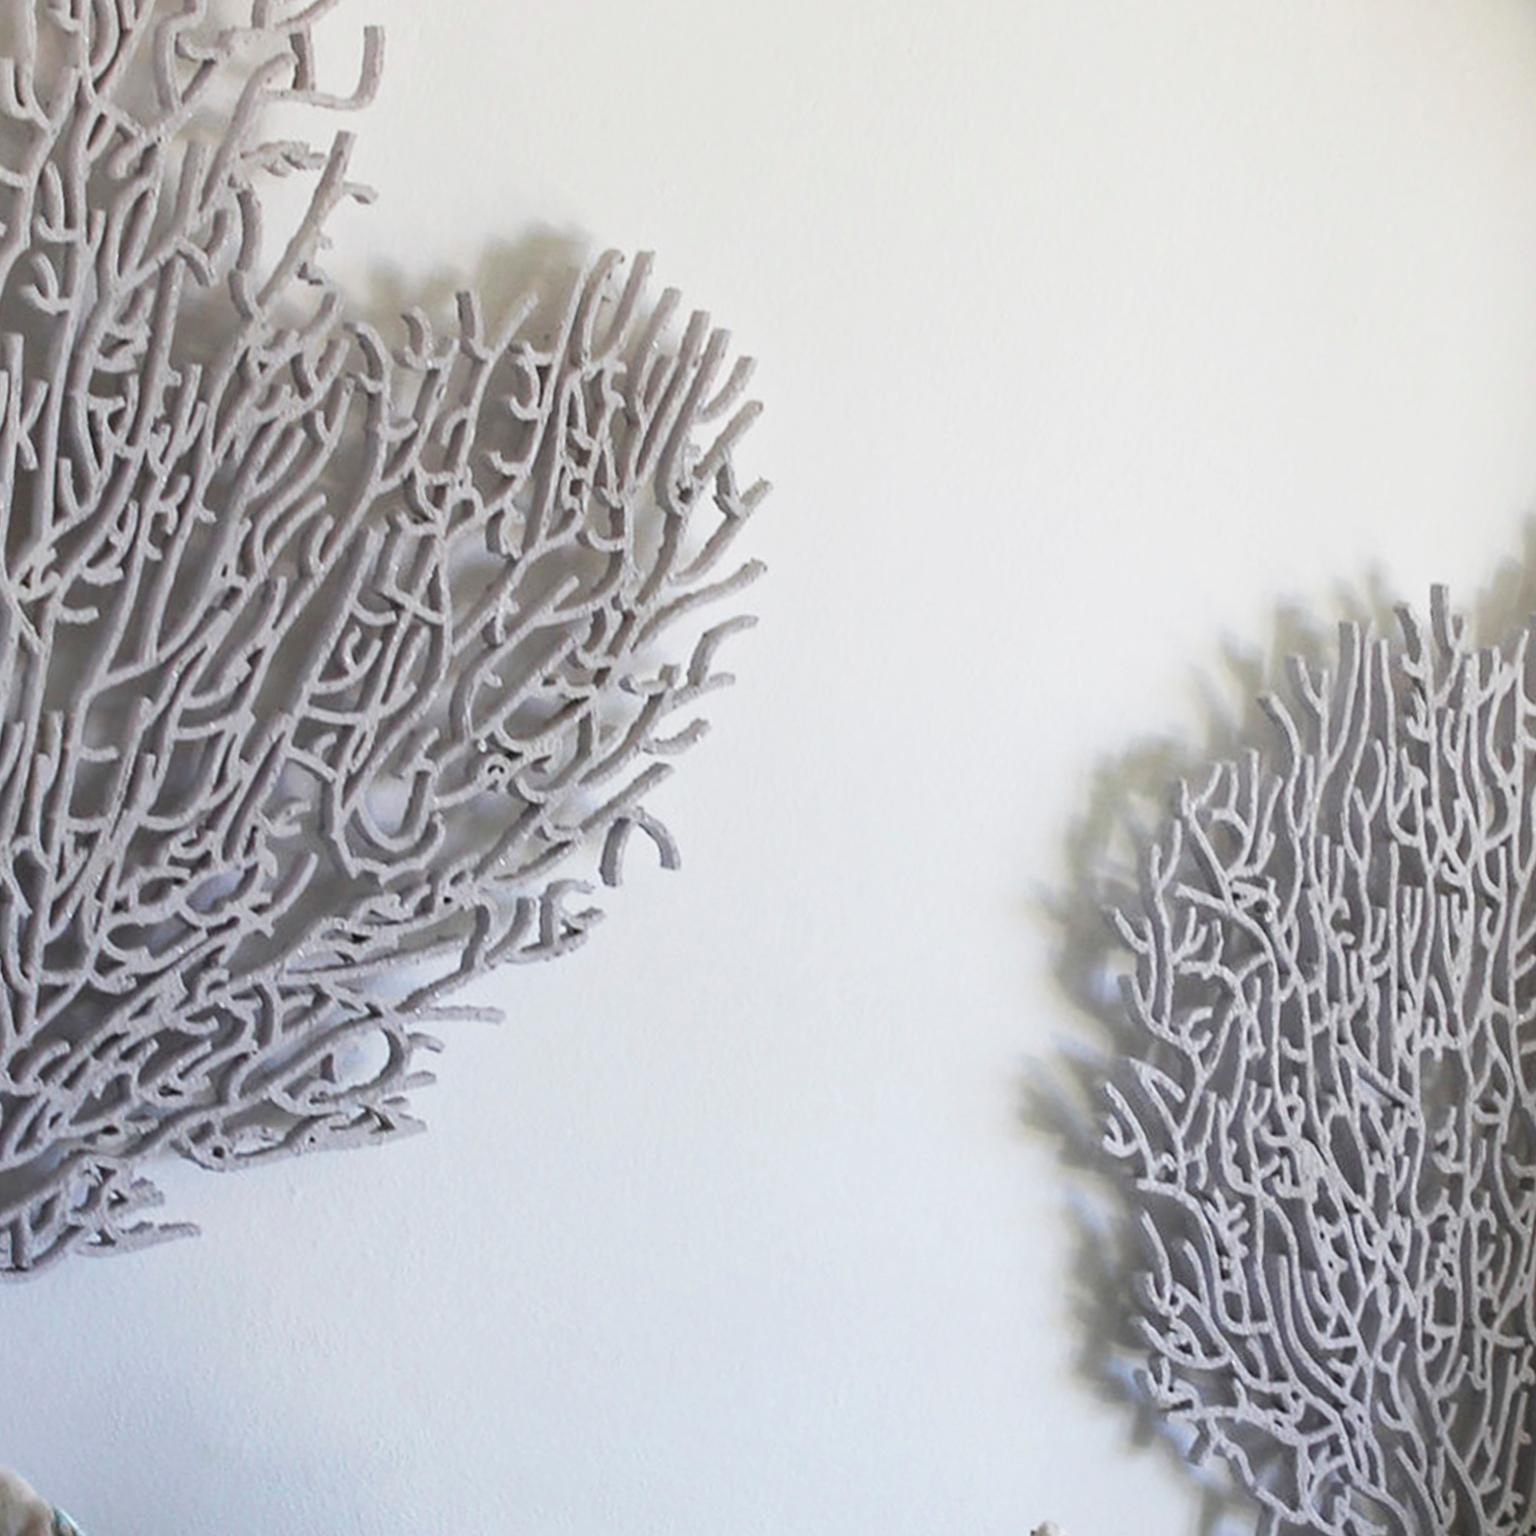 Korallen sind von hoher Qualität. Skulptur einer Skulptur aus der Zeit. Natürliche natürliche Texturen (Grau), Still-Life Sculpture, von Arozarena De La Fuente